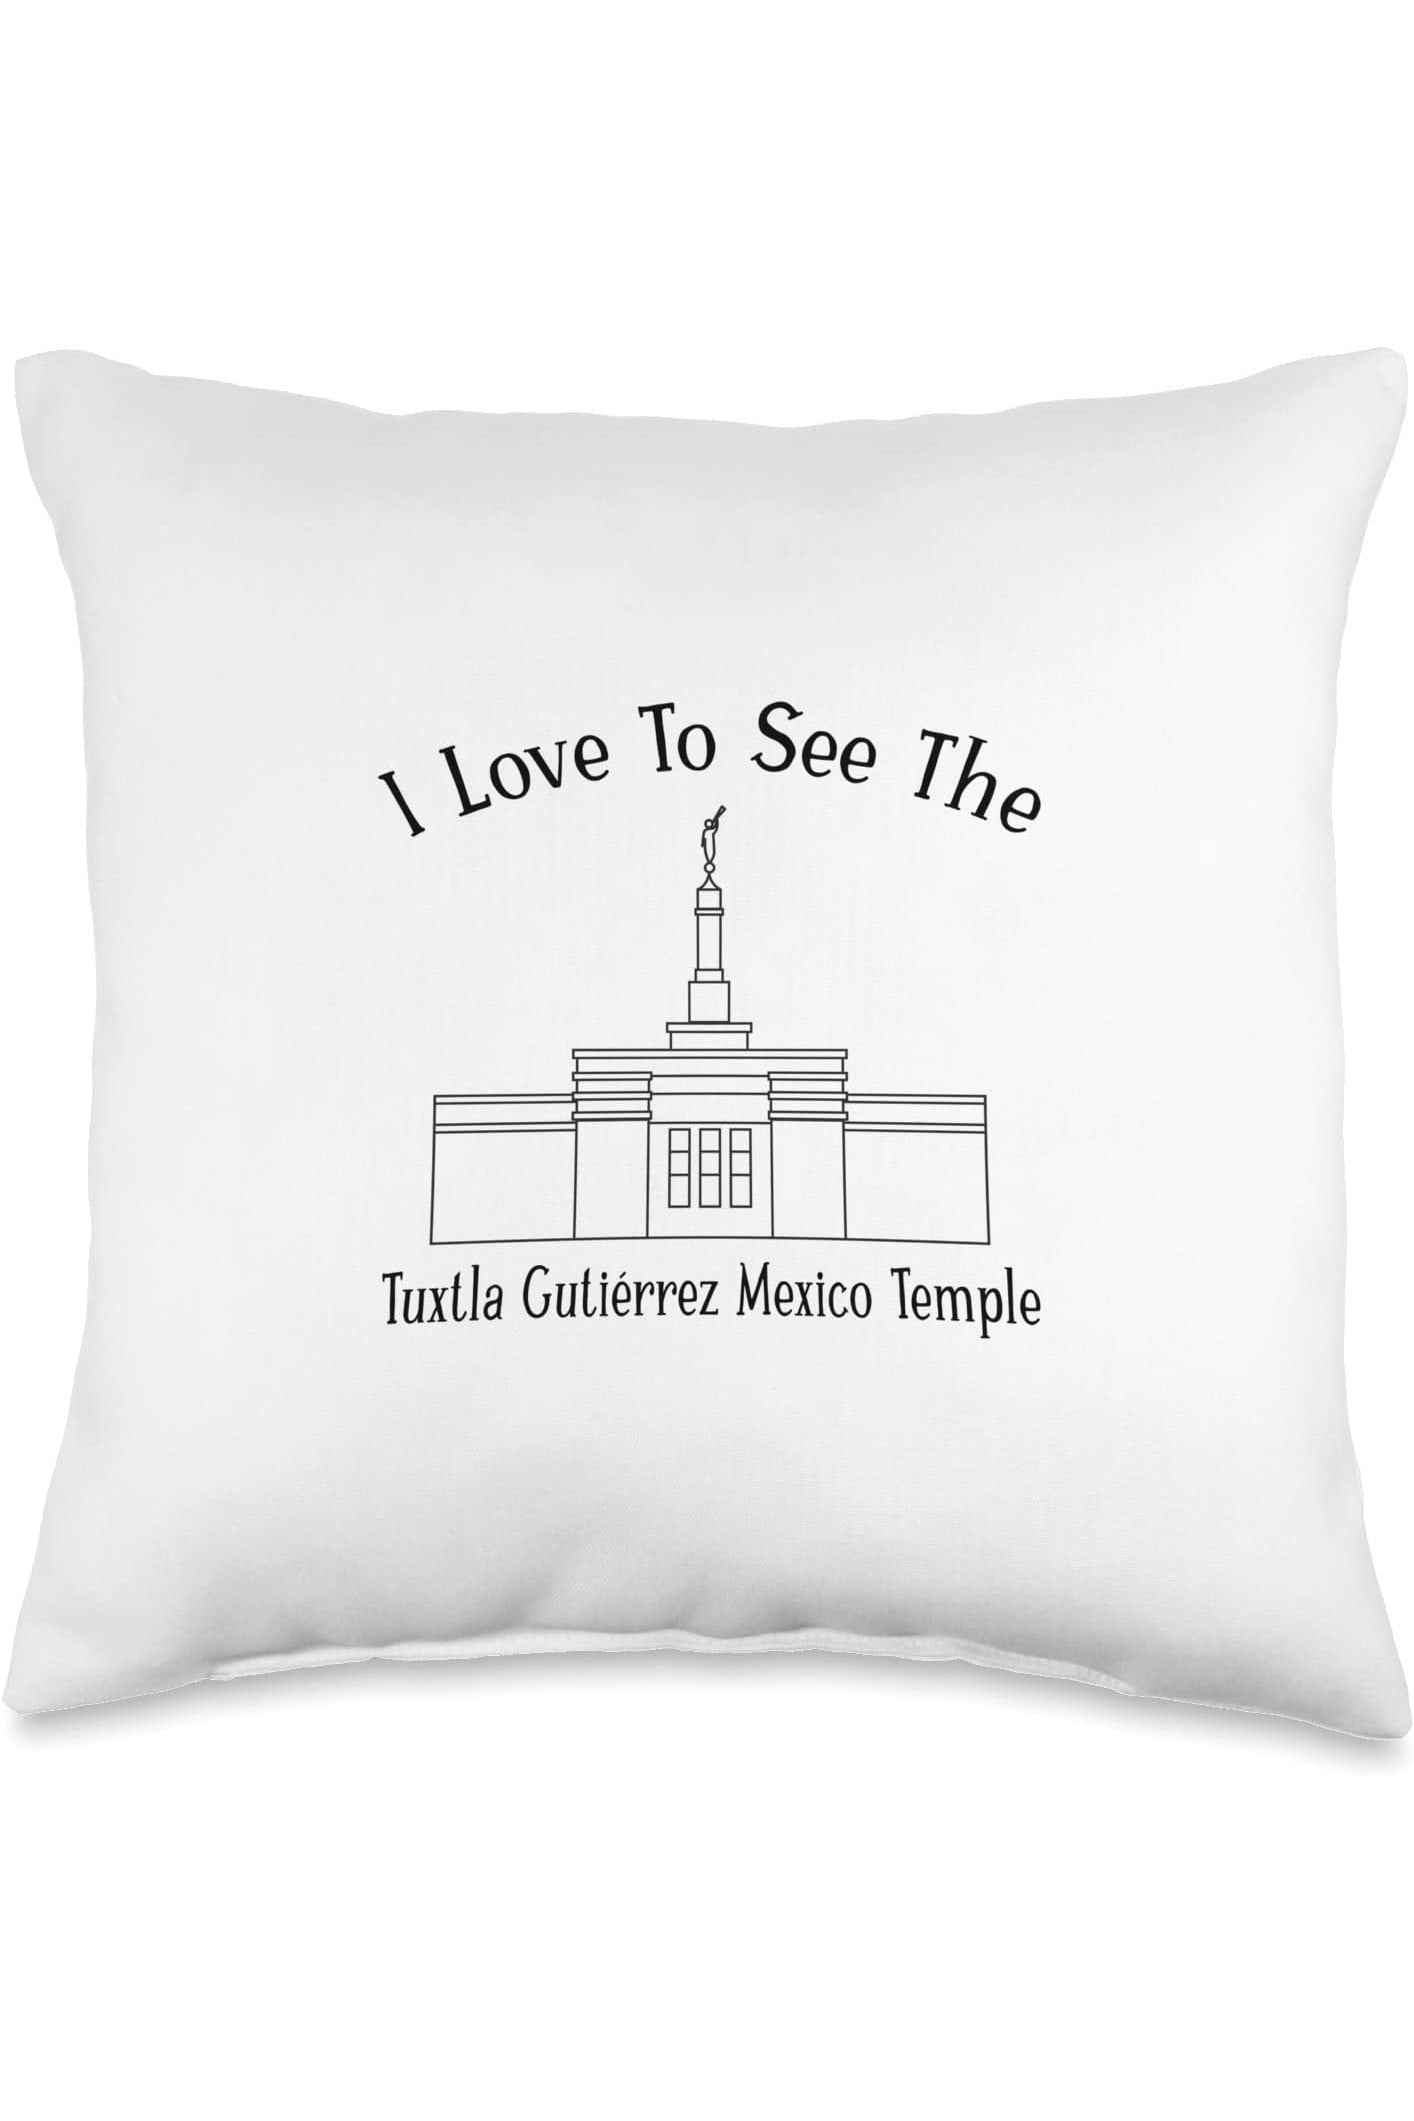 Tuxtla Gutierrez Mexico Temple Throw Pillows - Happy Style (English) US